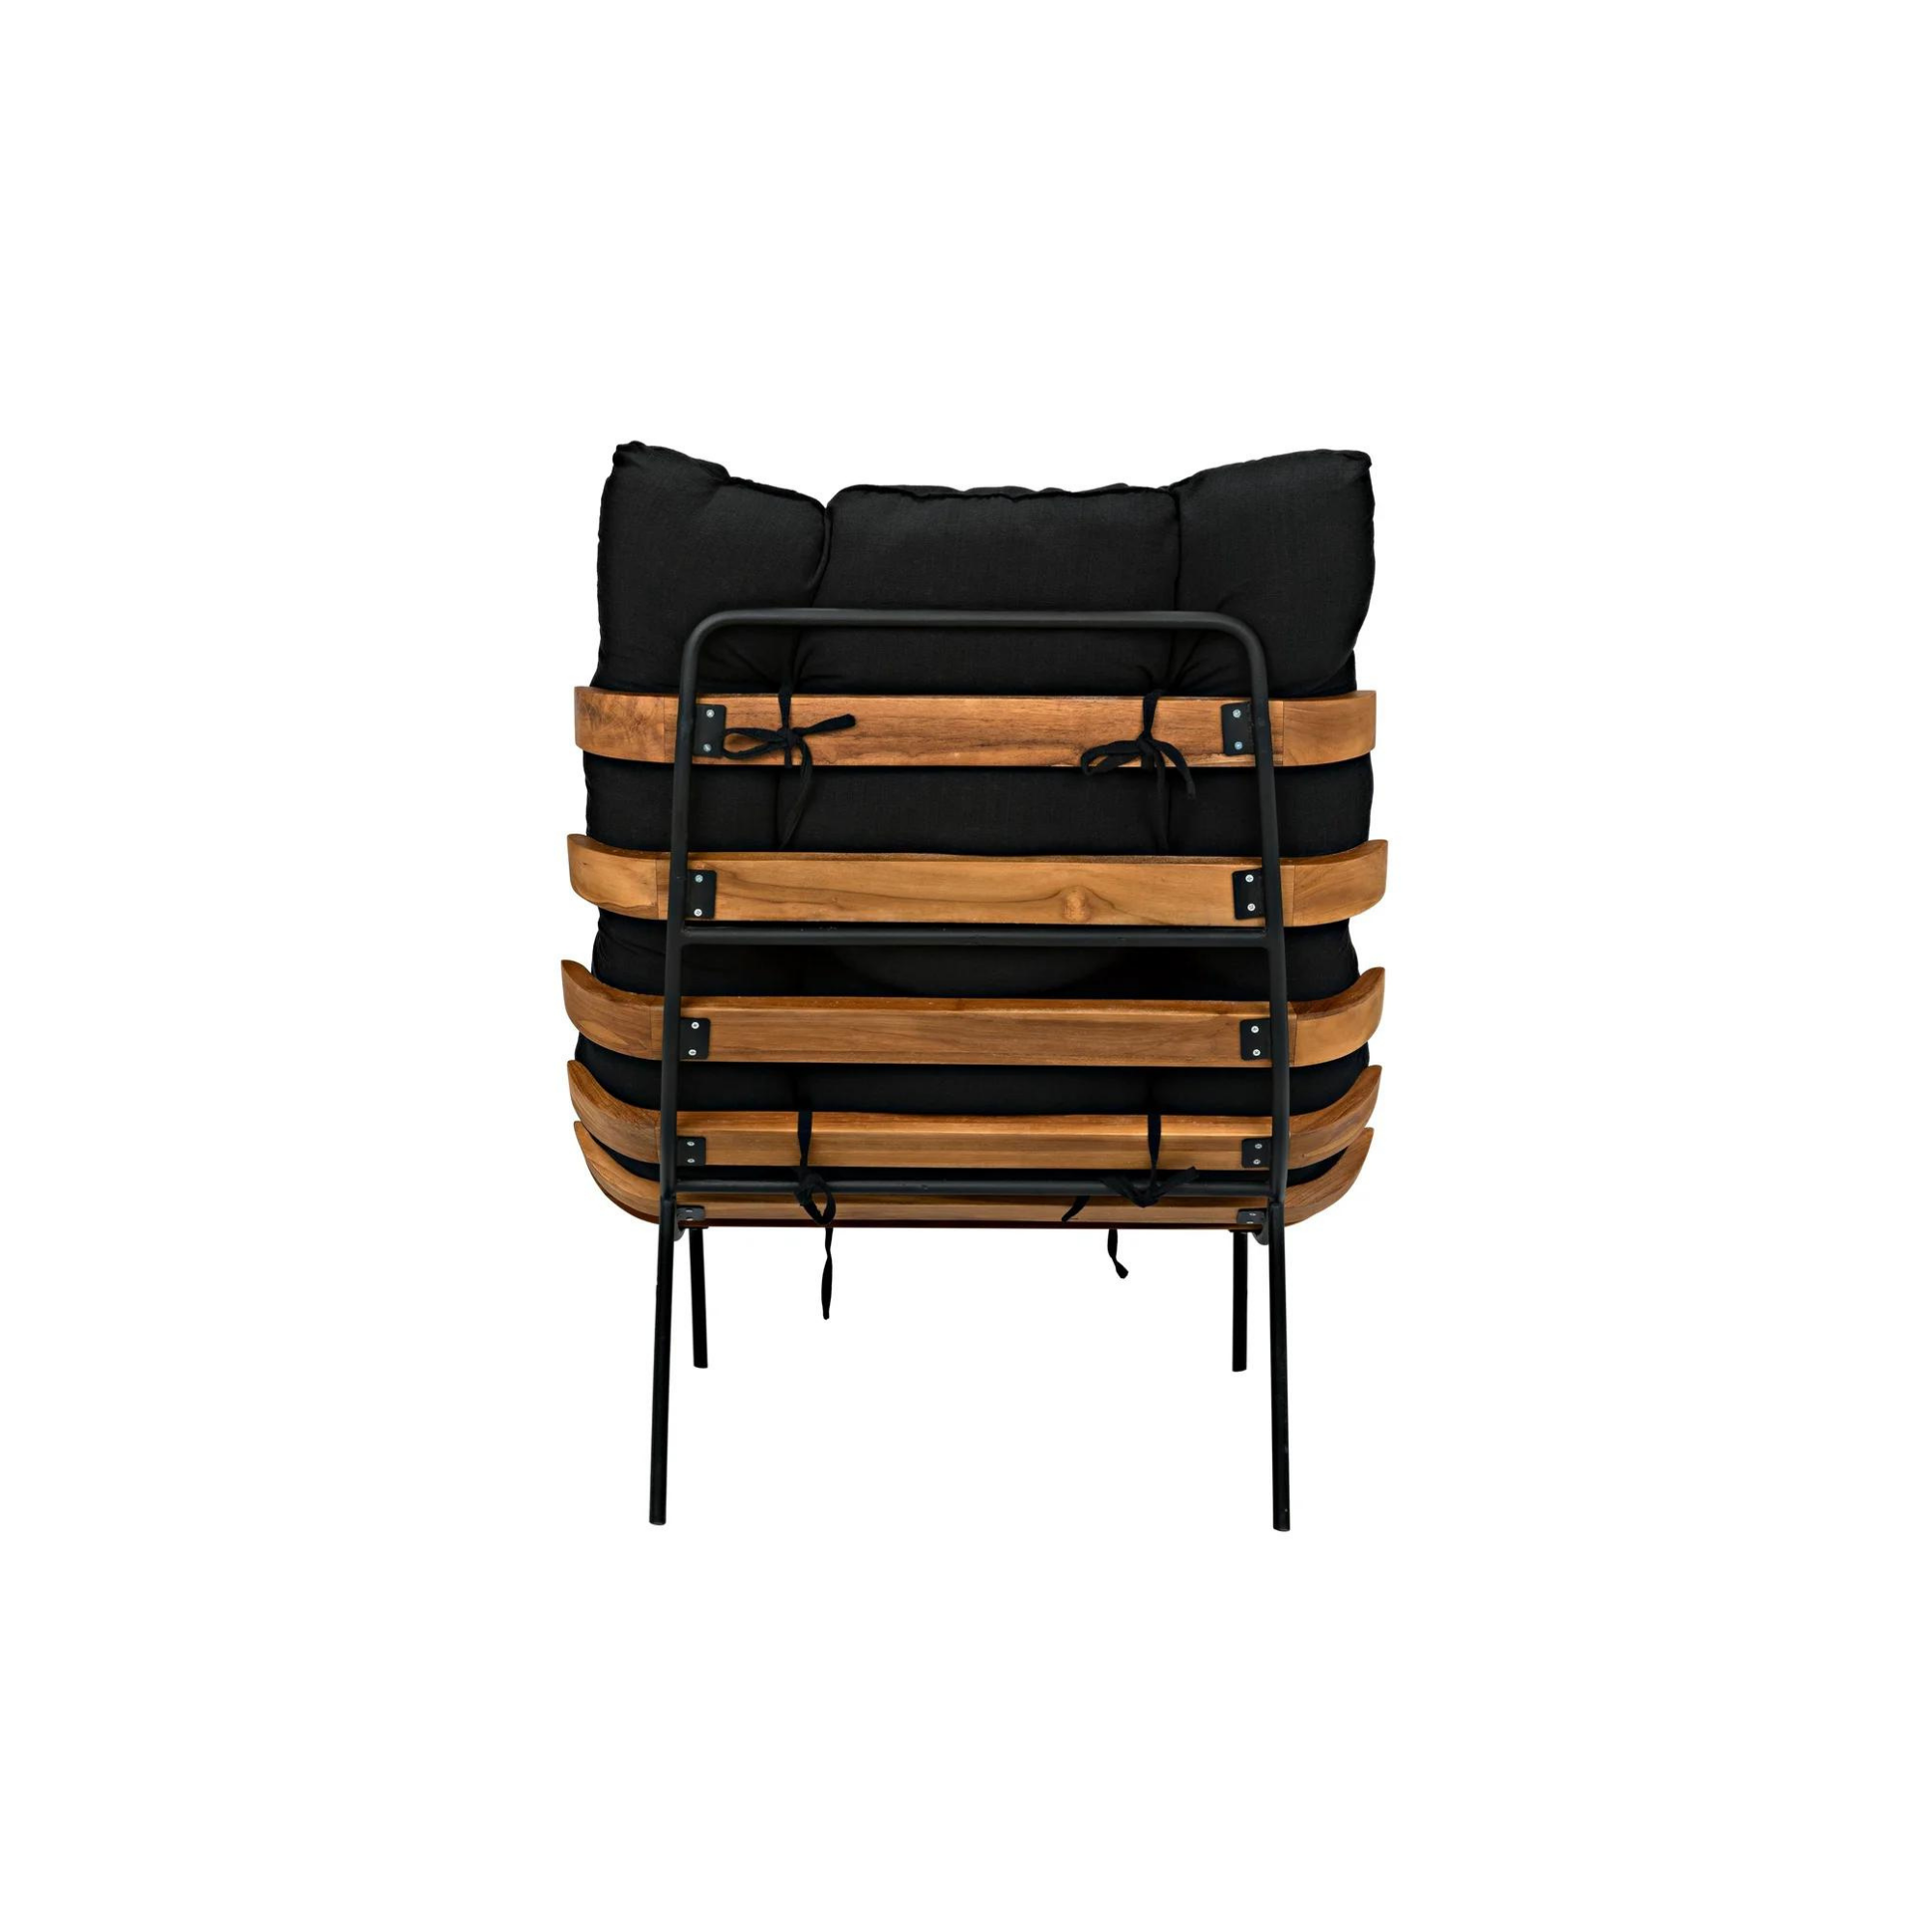 Hanzo Chair - StyleMeGHD - Chairs